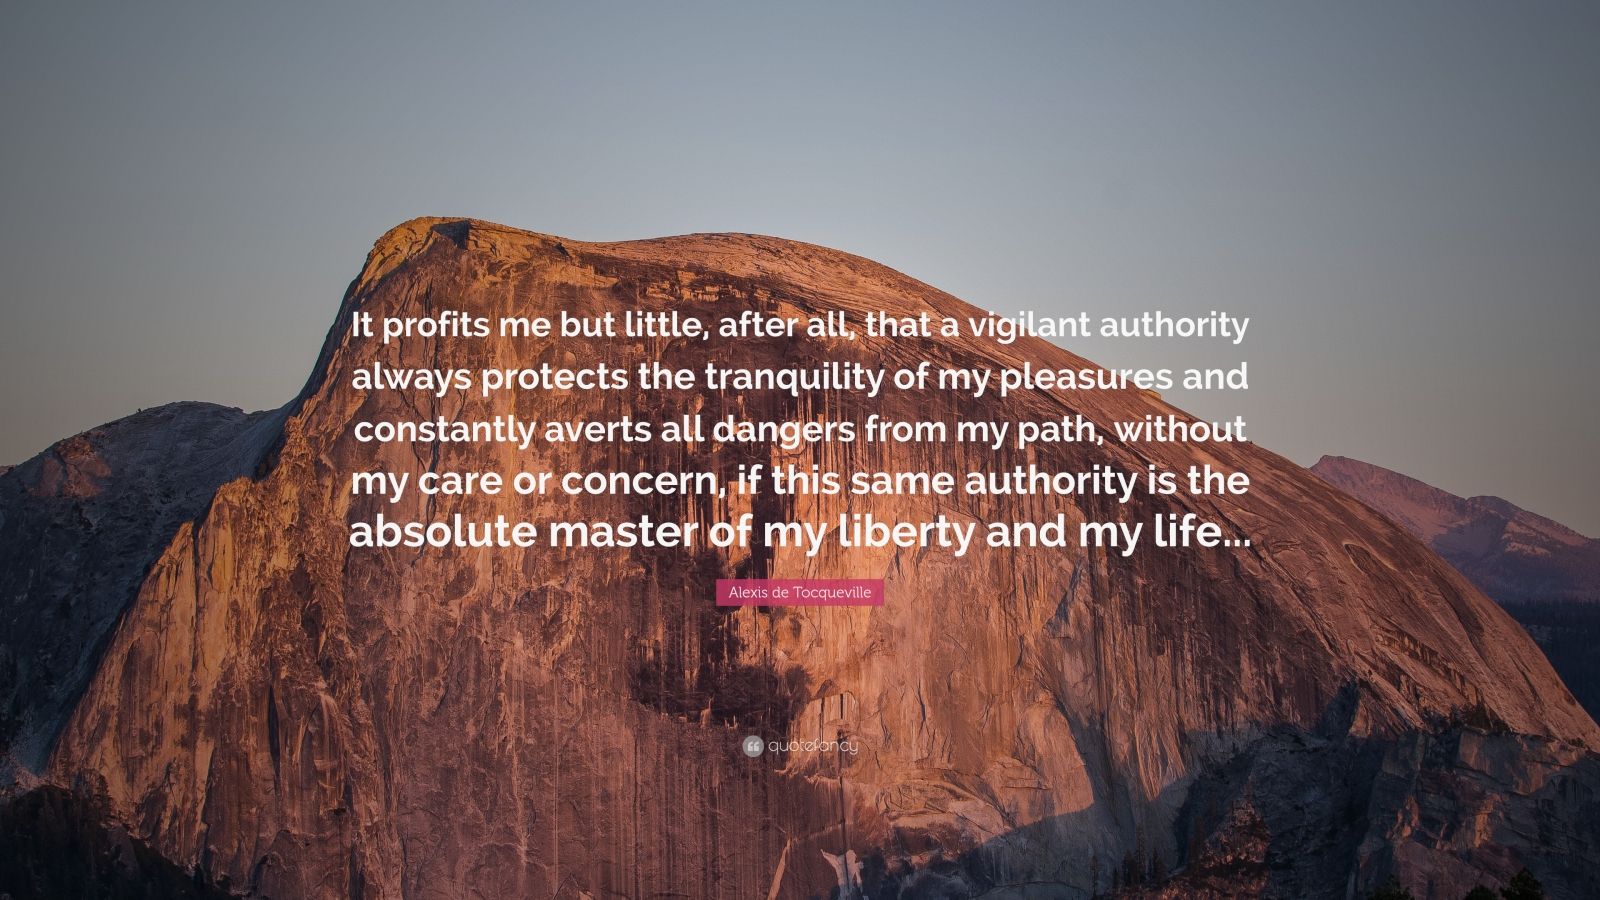 Alexis de Tocqueville Quote: “It profits me but little, after all, that